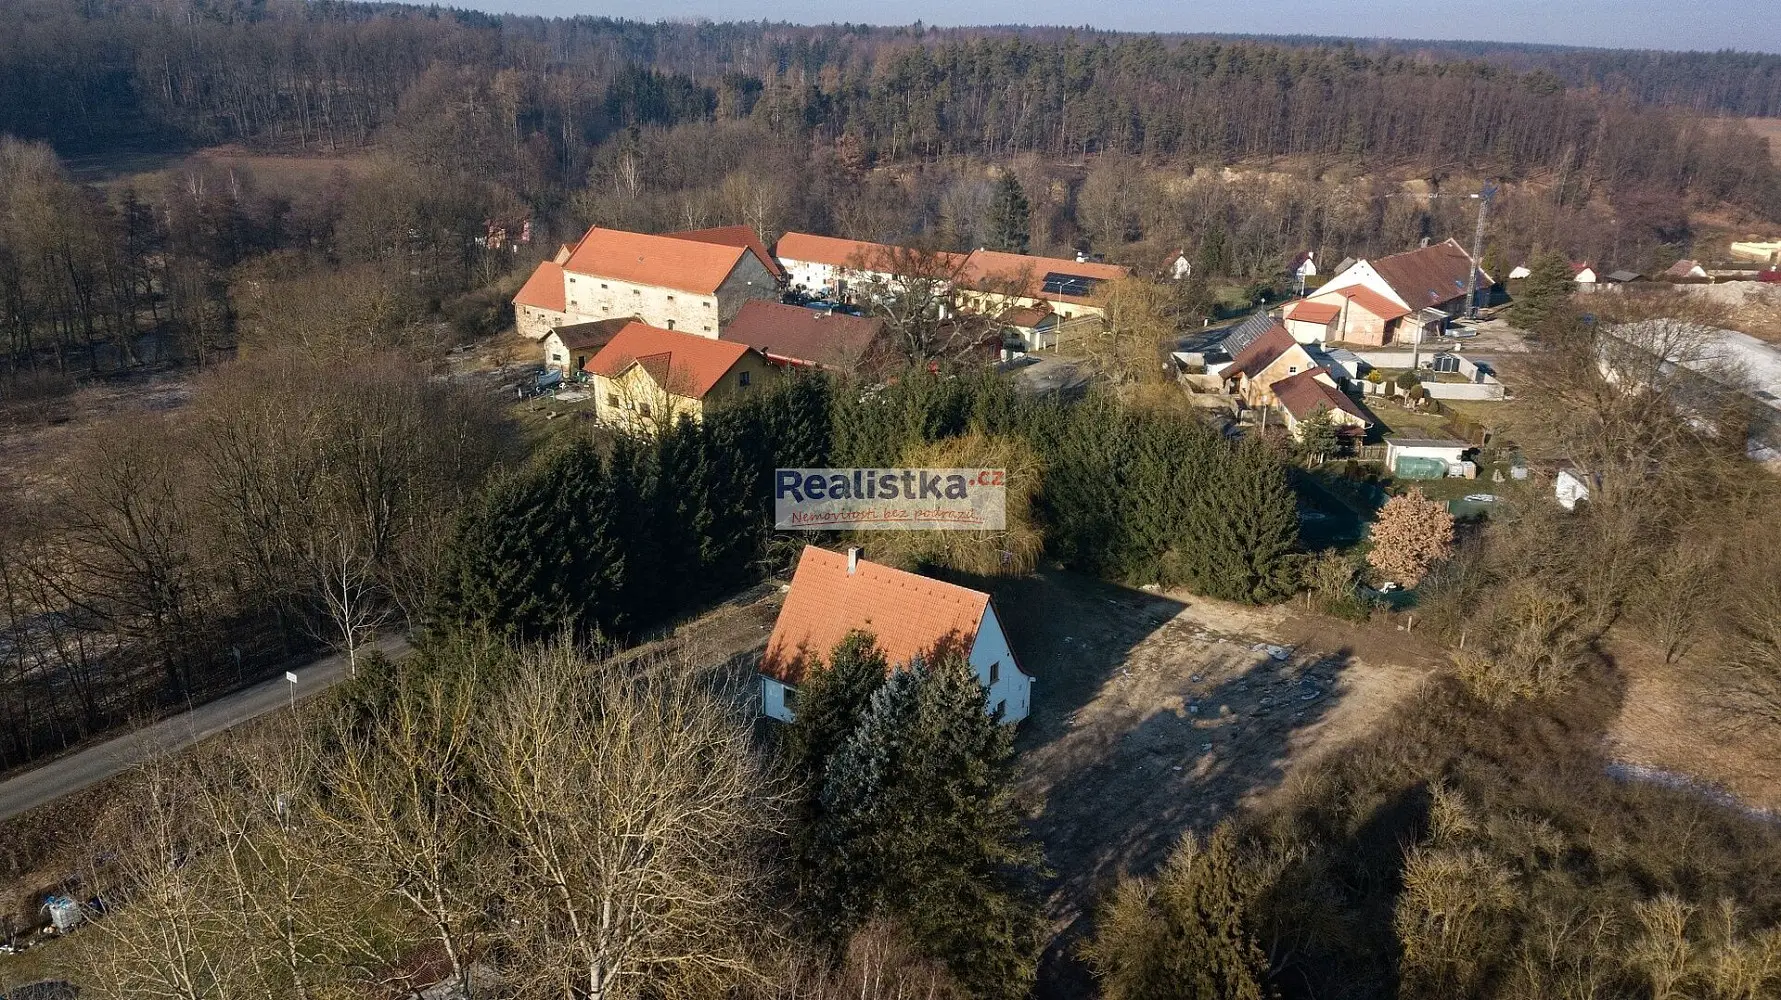 Politických vězňů, Holýšov, okres Plzeň-Jih